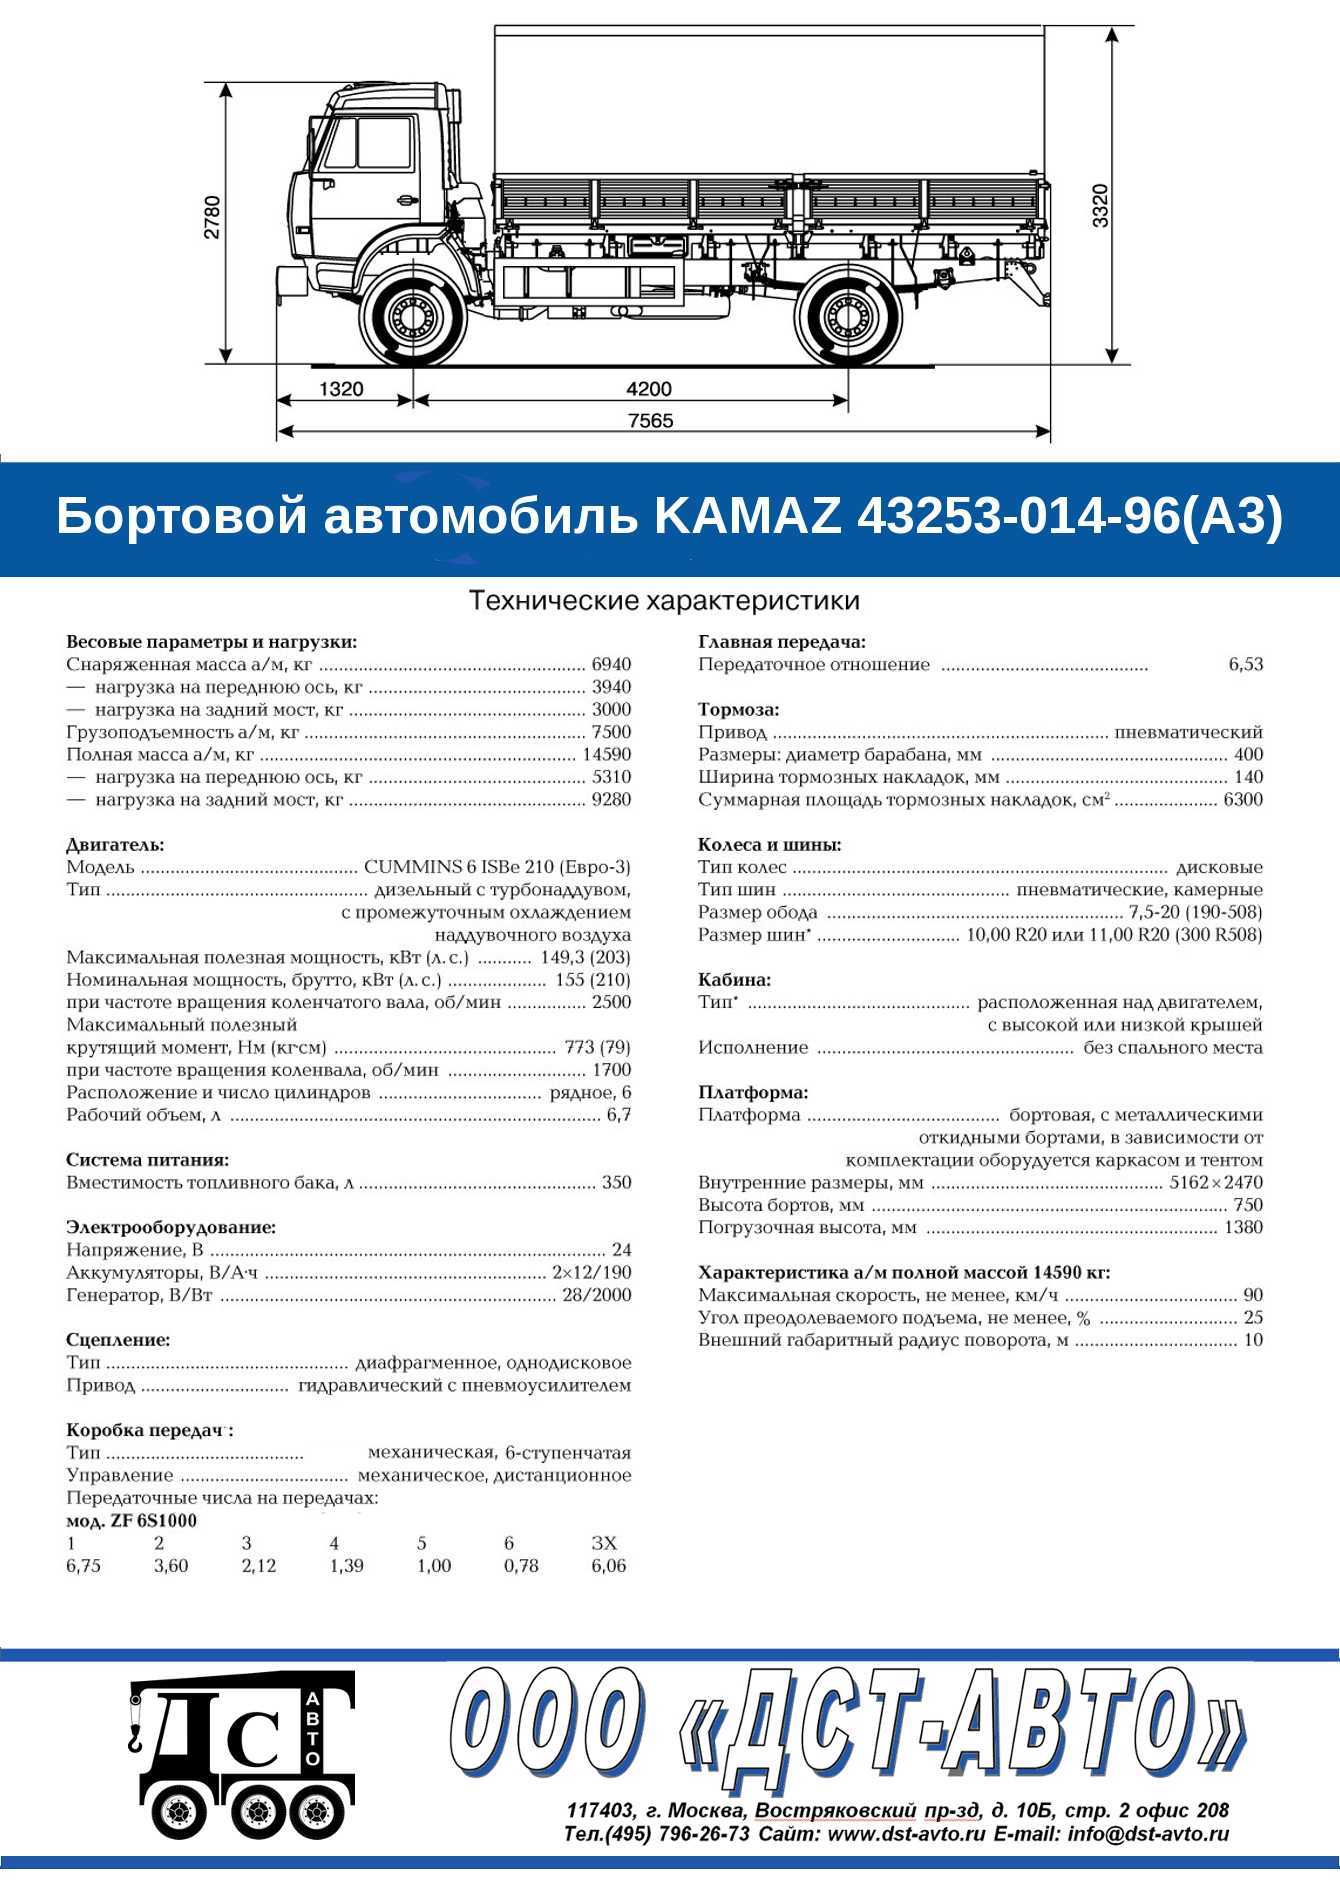 Камаз-65117: грузоподъемность бортового самосвала в тоннах, габаритные размеры зерновоза, технические характеристики и расход топлива